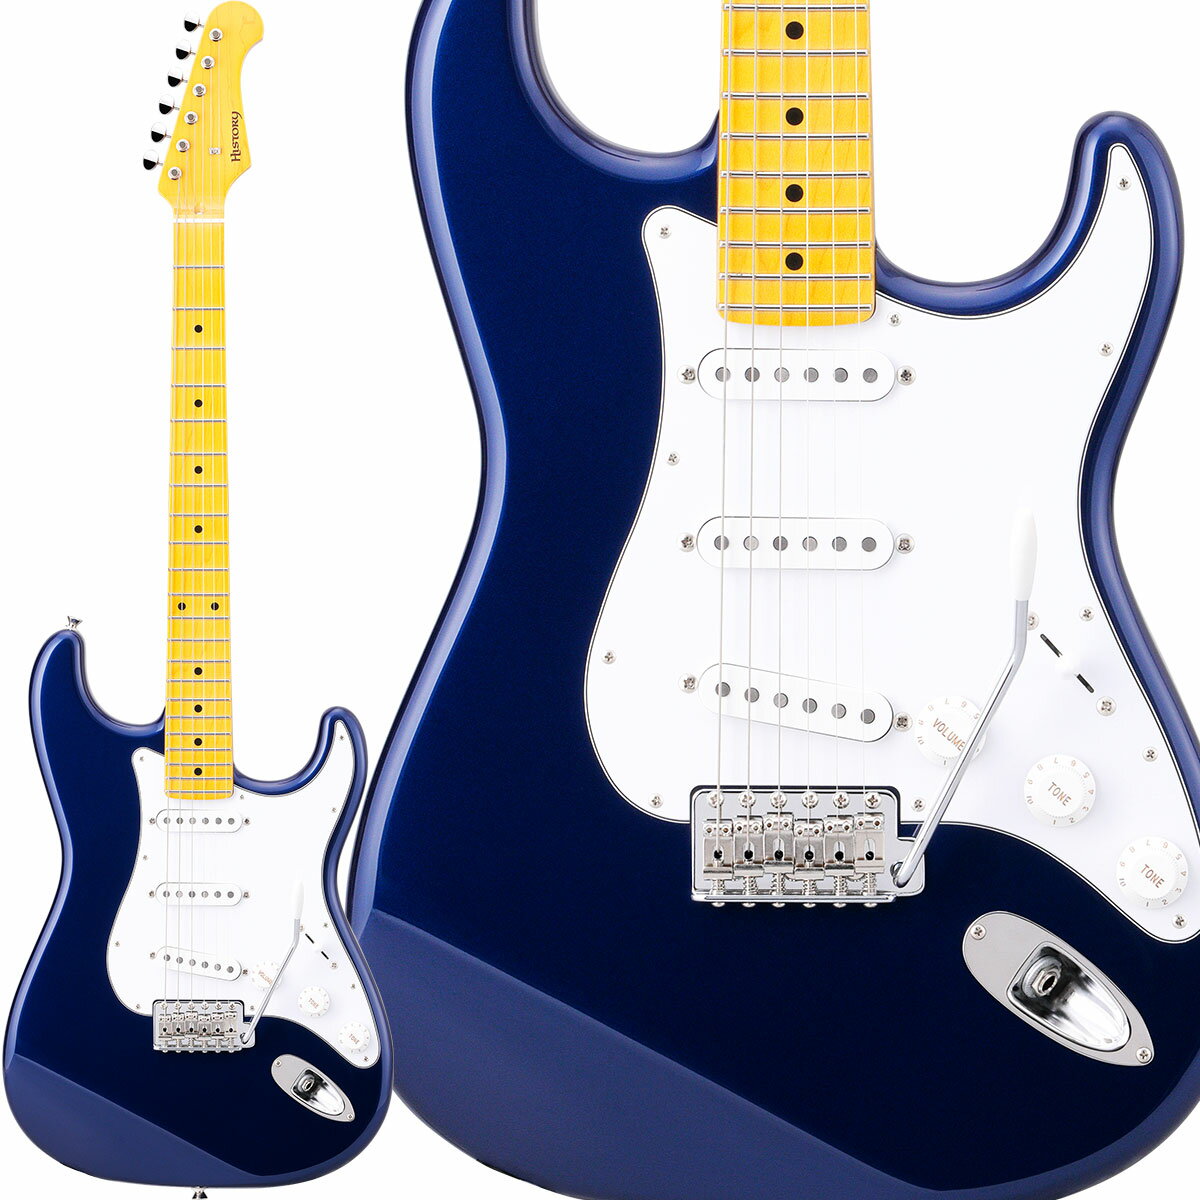 【純国産ギター】 HISTORY HST/m-Standard MBL Metallic Blue ハムバッカー切替可能 アルダーボディ エレキギター ストラトキャスター ヒストリー 3年保証 日本製 Standard series